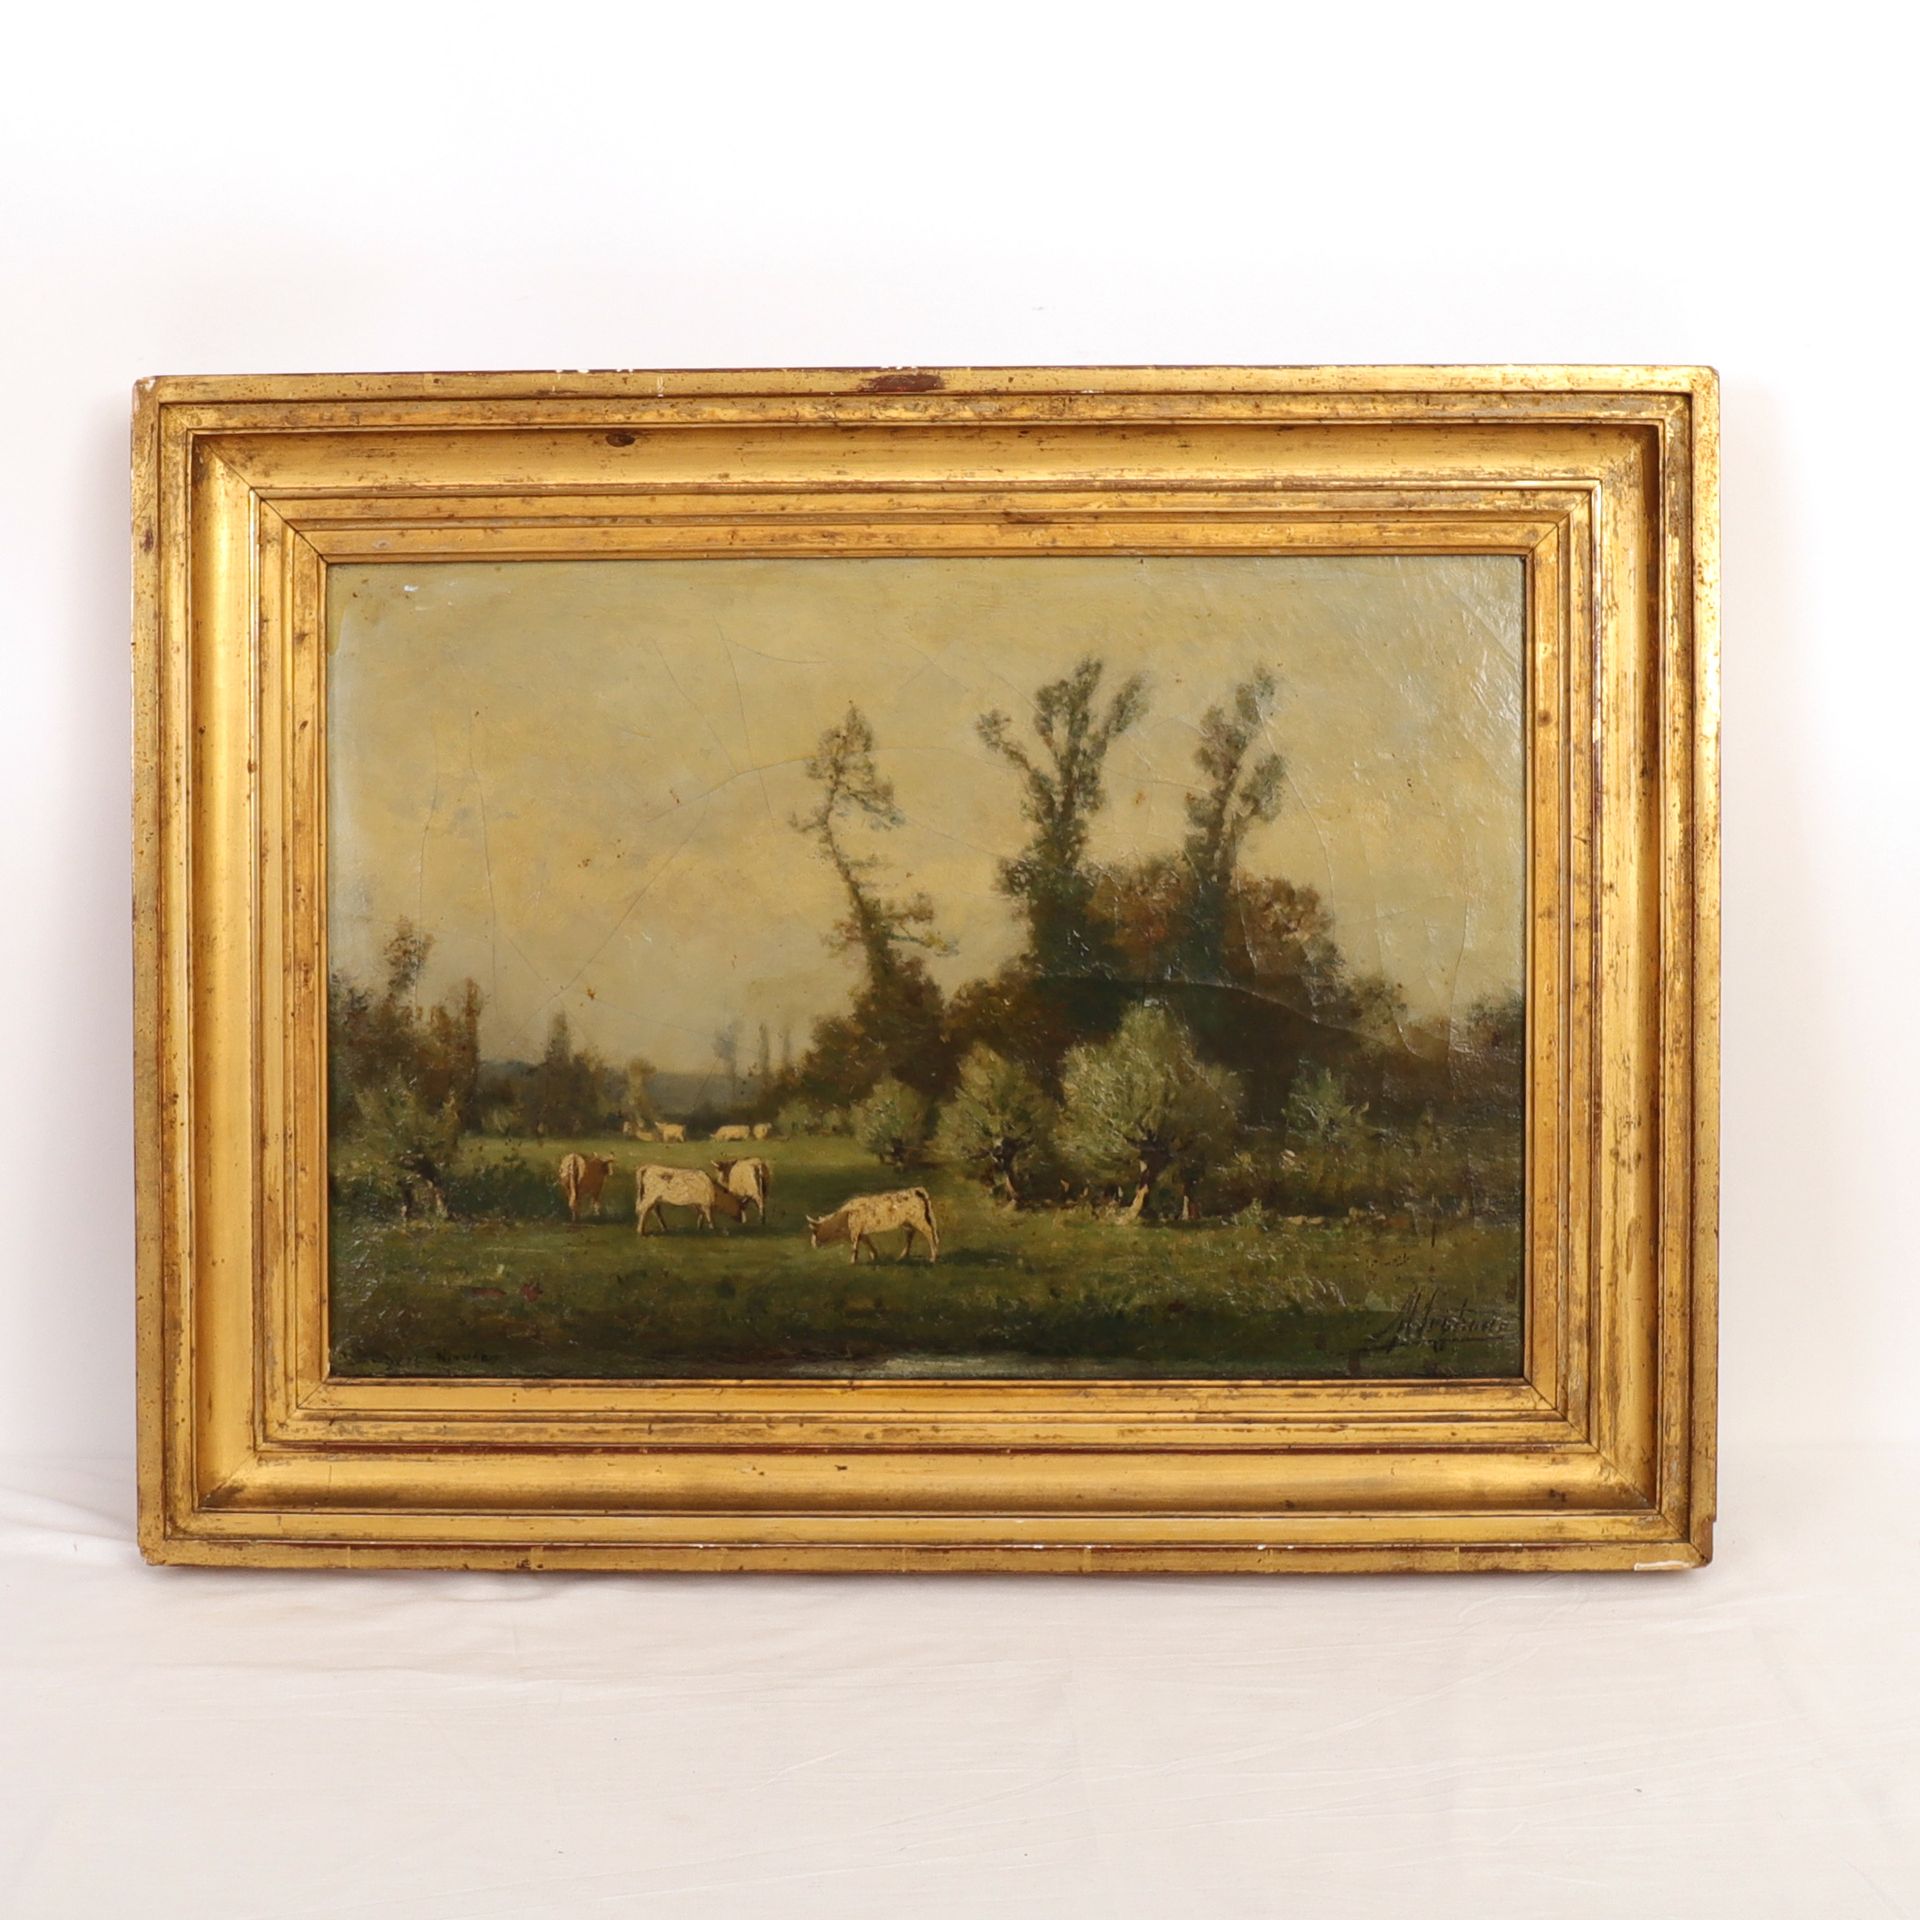 Null Gemälde "Kühe auf der Weide" 19. Jahrhundert

Öl auf Leinwand, gerahmt.

Si&hellip;